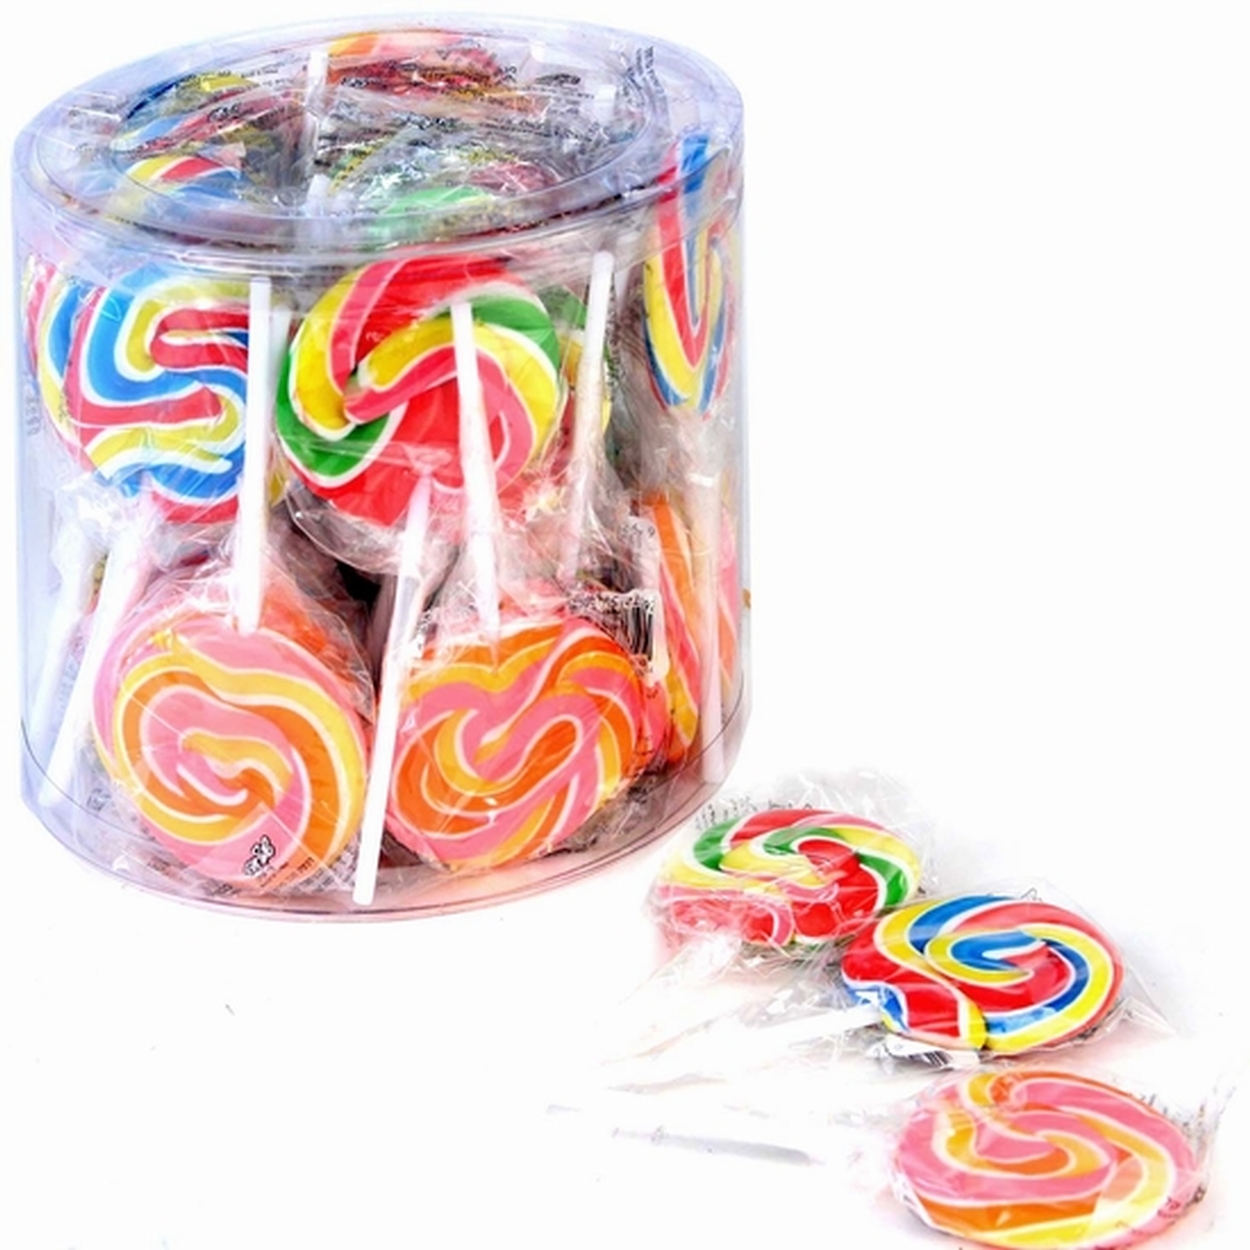 giant swirl lollipops